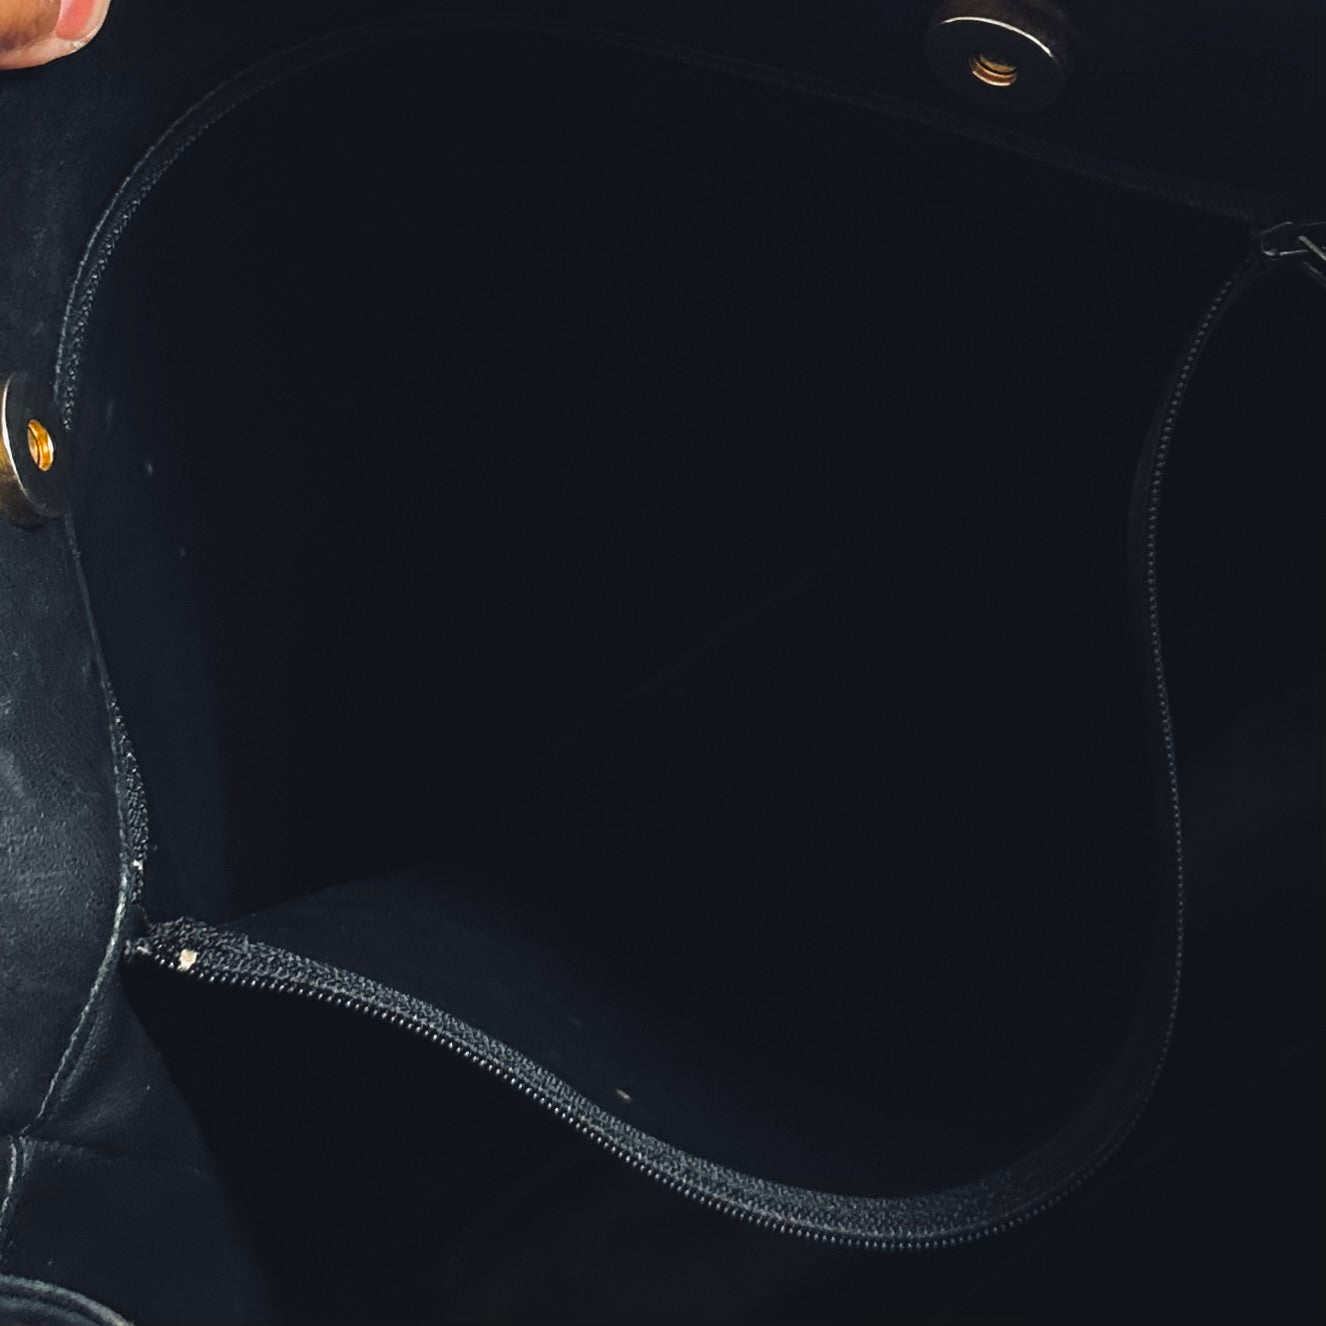 Chanel Black GHW CC Logo Lambskin Leather Shopper Shoulder Tote Bag 1s